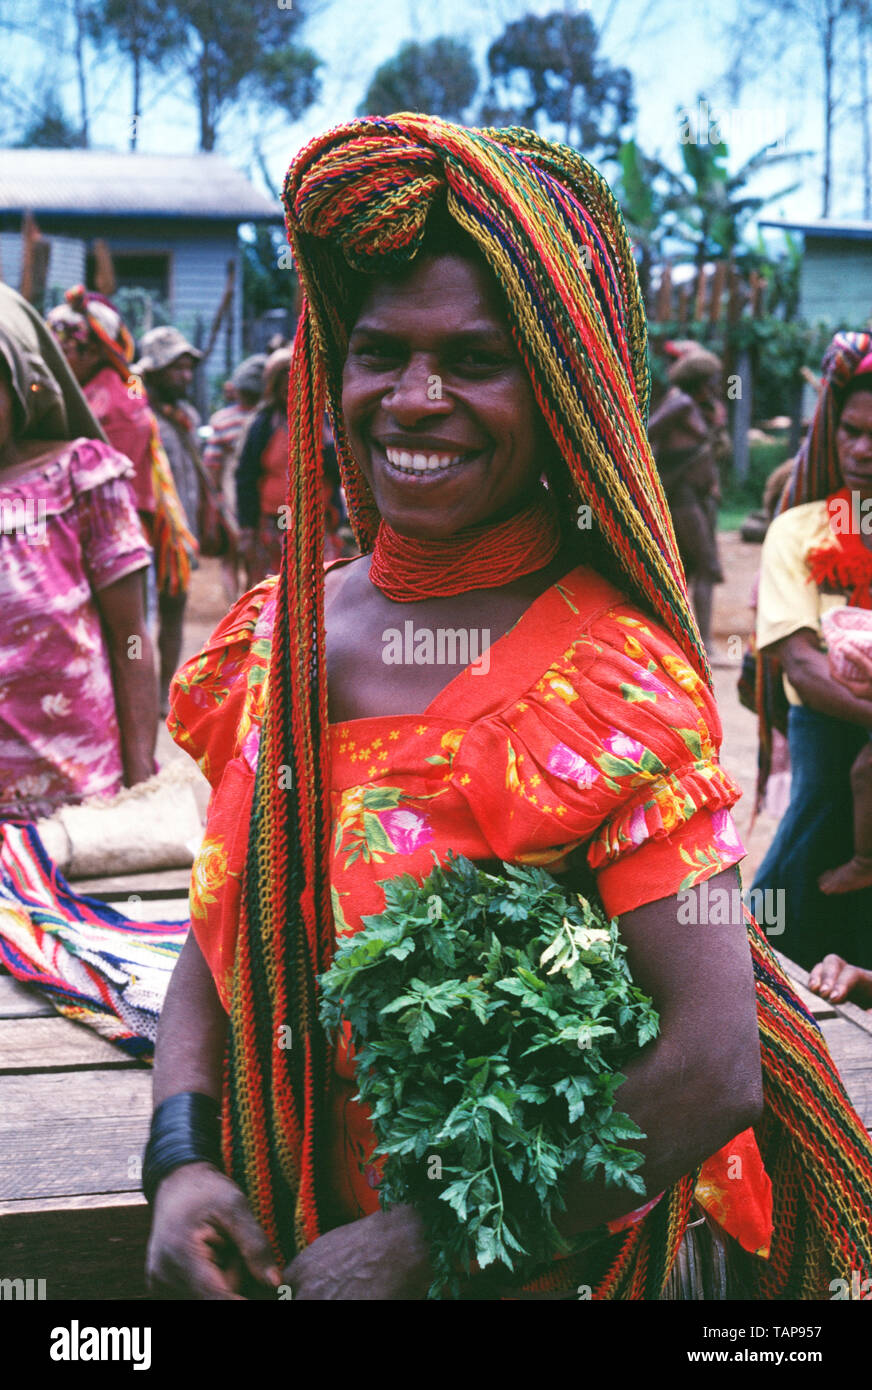 La Papouasie-Nouvelle-Guinée. La région de la rivière Sepik. Femme de la région à l'extérieur dans le marché. Banque D'Images